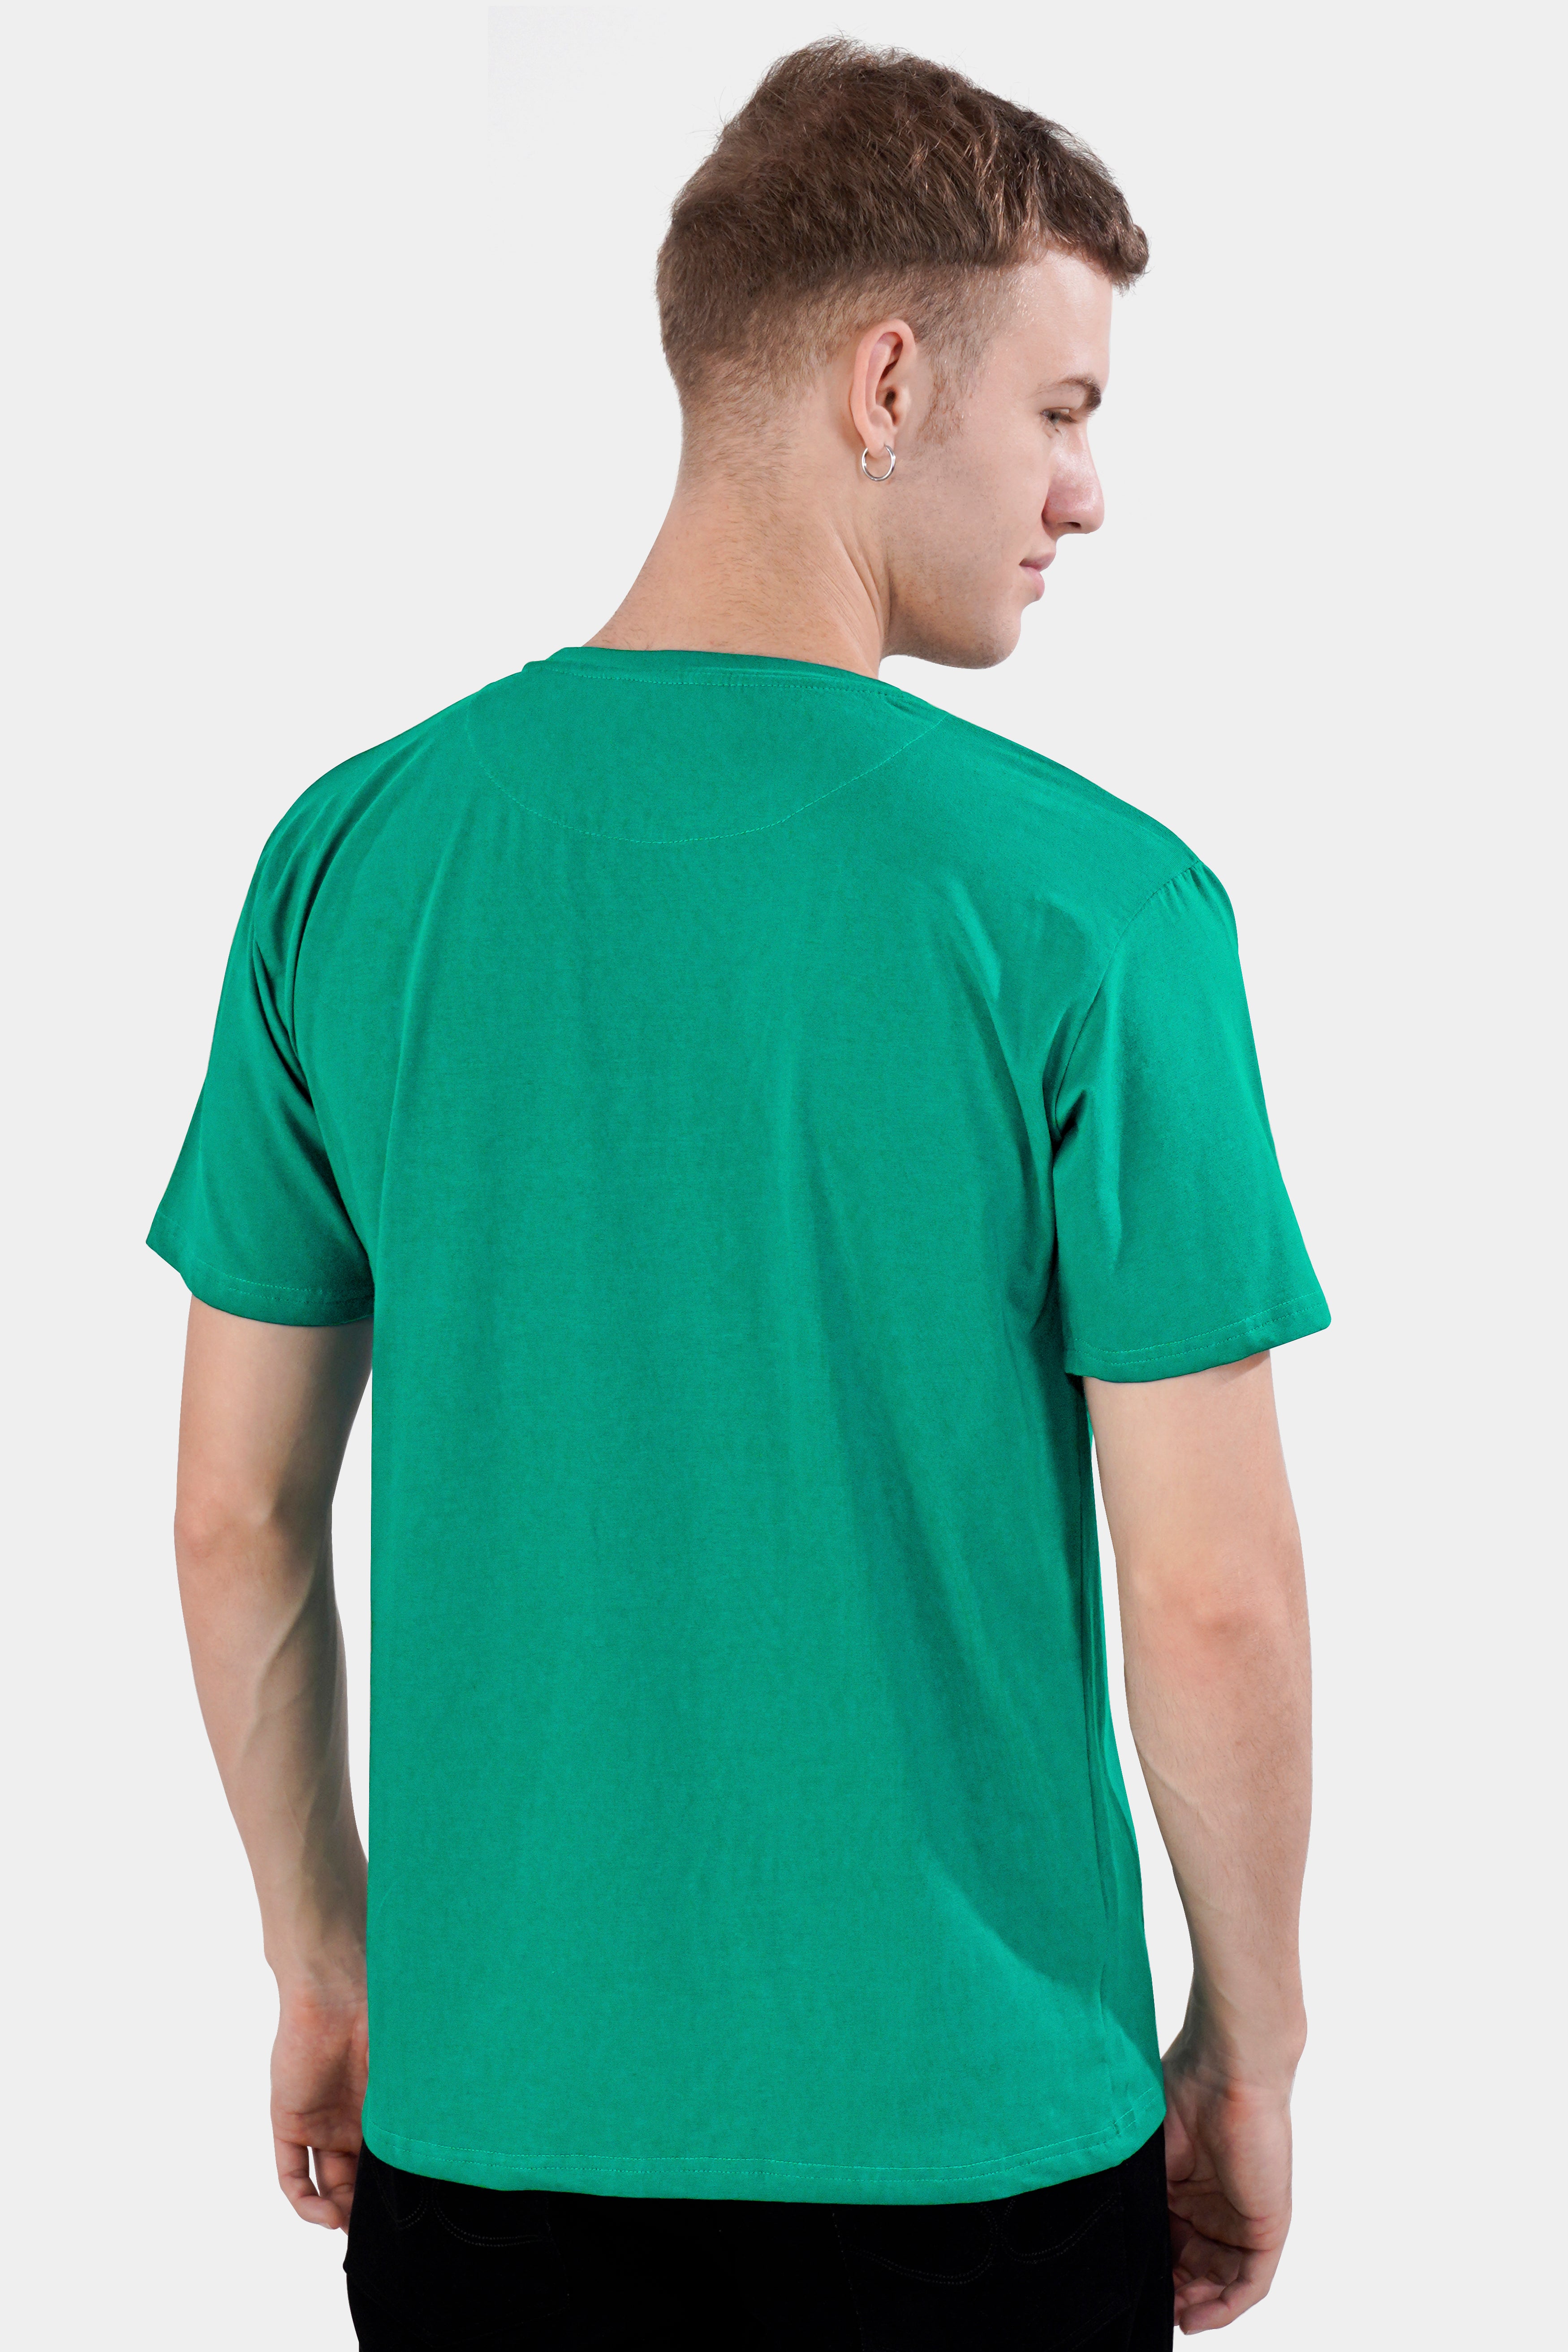 Gossamer Green Printed Premium Cotton T-shirt TS005-W015-RPRT78-S, TS005-W015-RPRT78-M, TS005-W015-RPRT78-L, TS005-W015-RPRT78-XL, TS005-W015-RPRT78-XXL